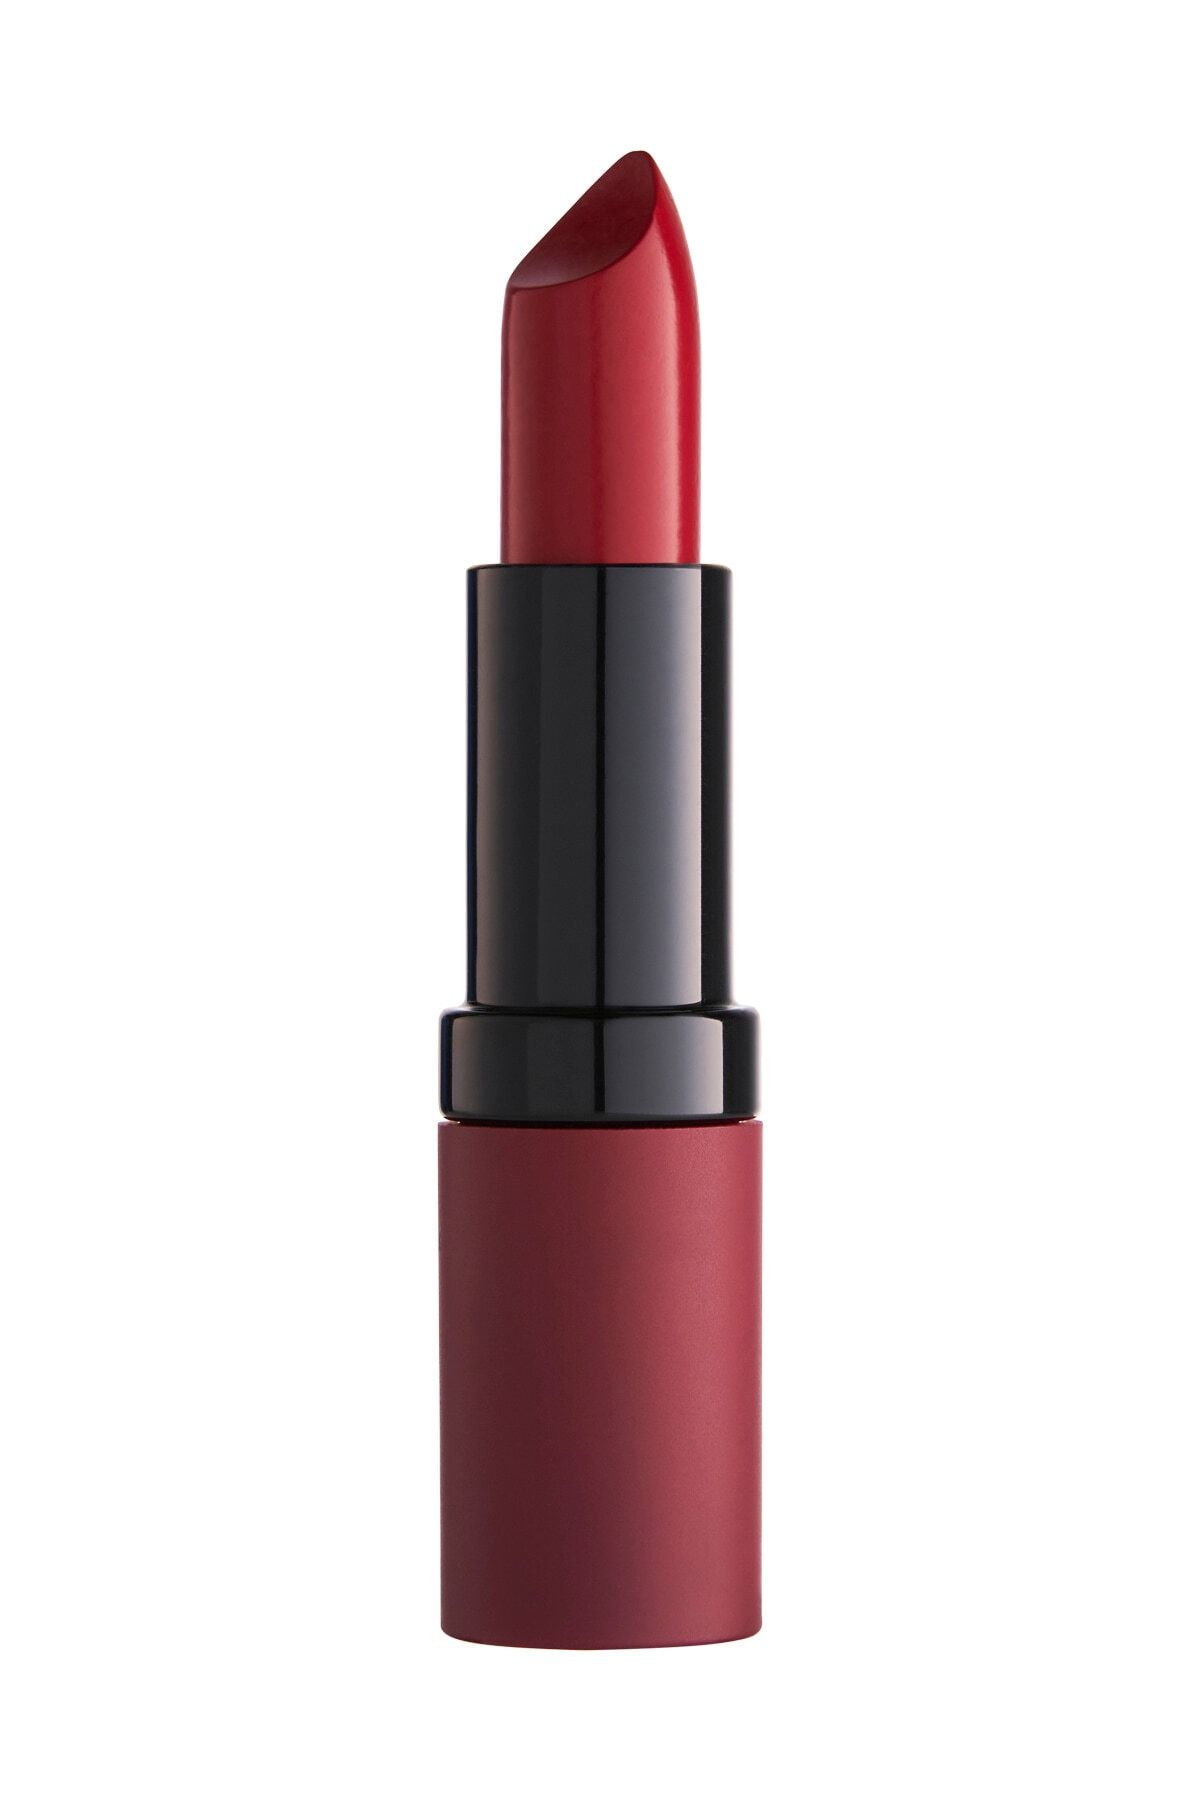 Golden Rose Velvet Matte Lipstick No:18 Real Red - Mat Ruj